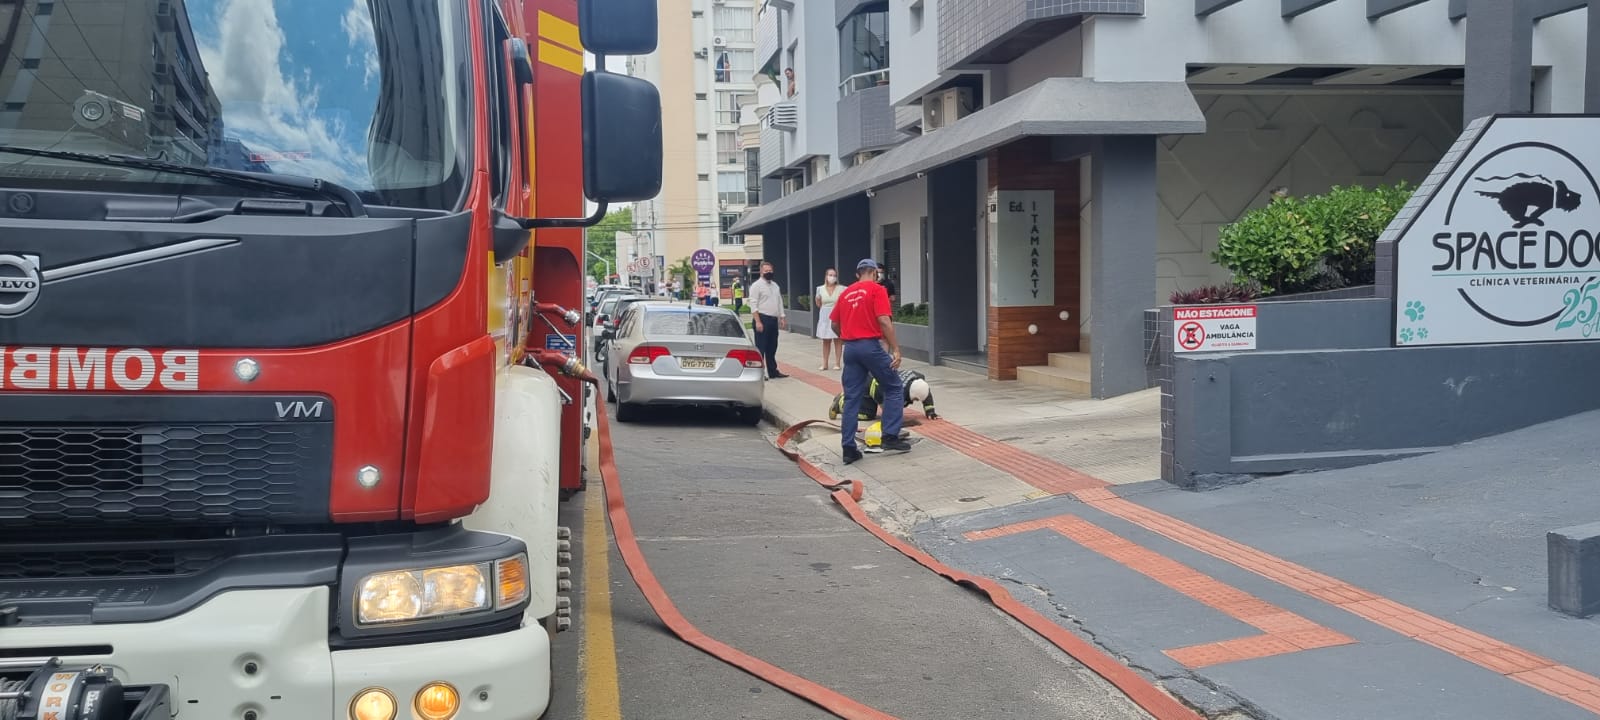 Vídeo: explosão e incêndio em edifício na área central de Criciúma mobilizam bombeiros